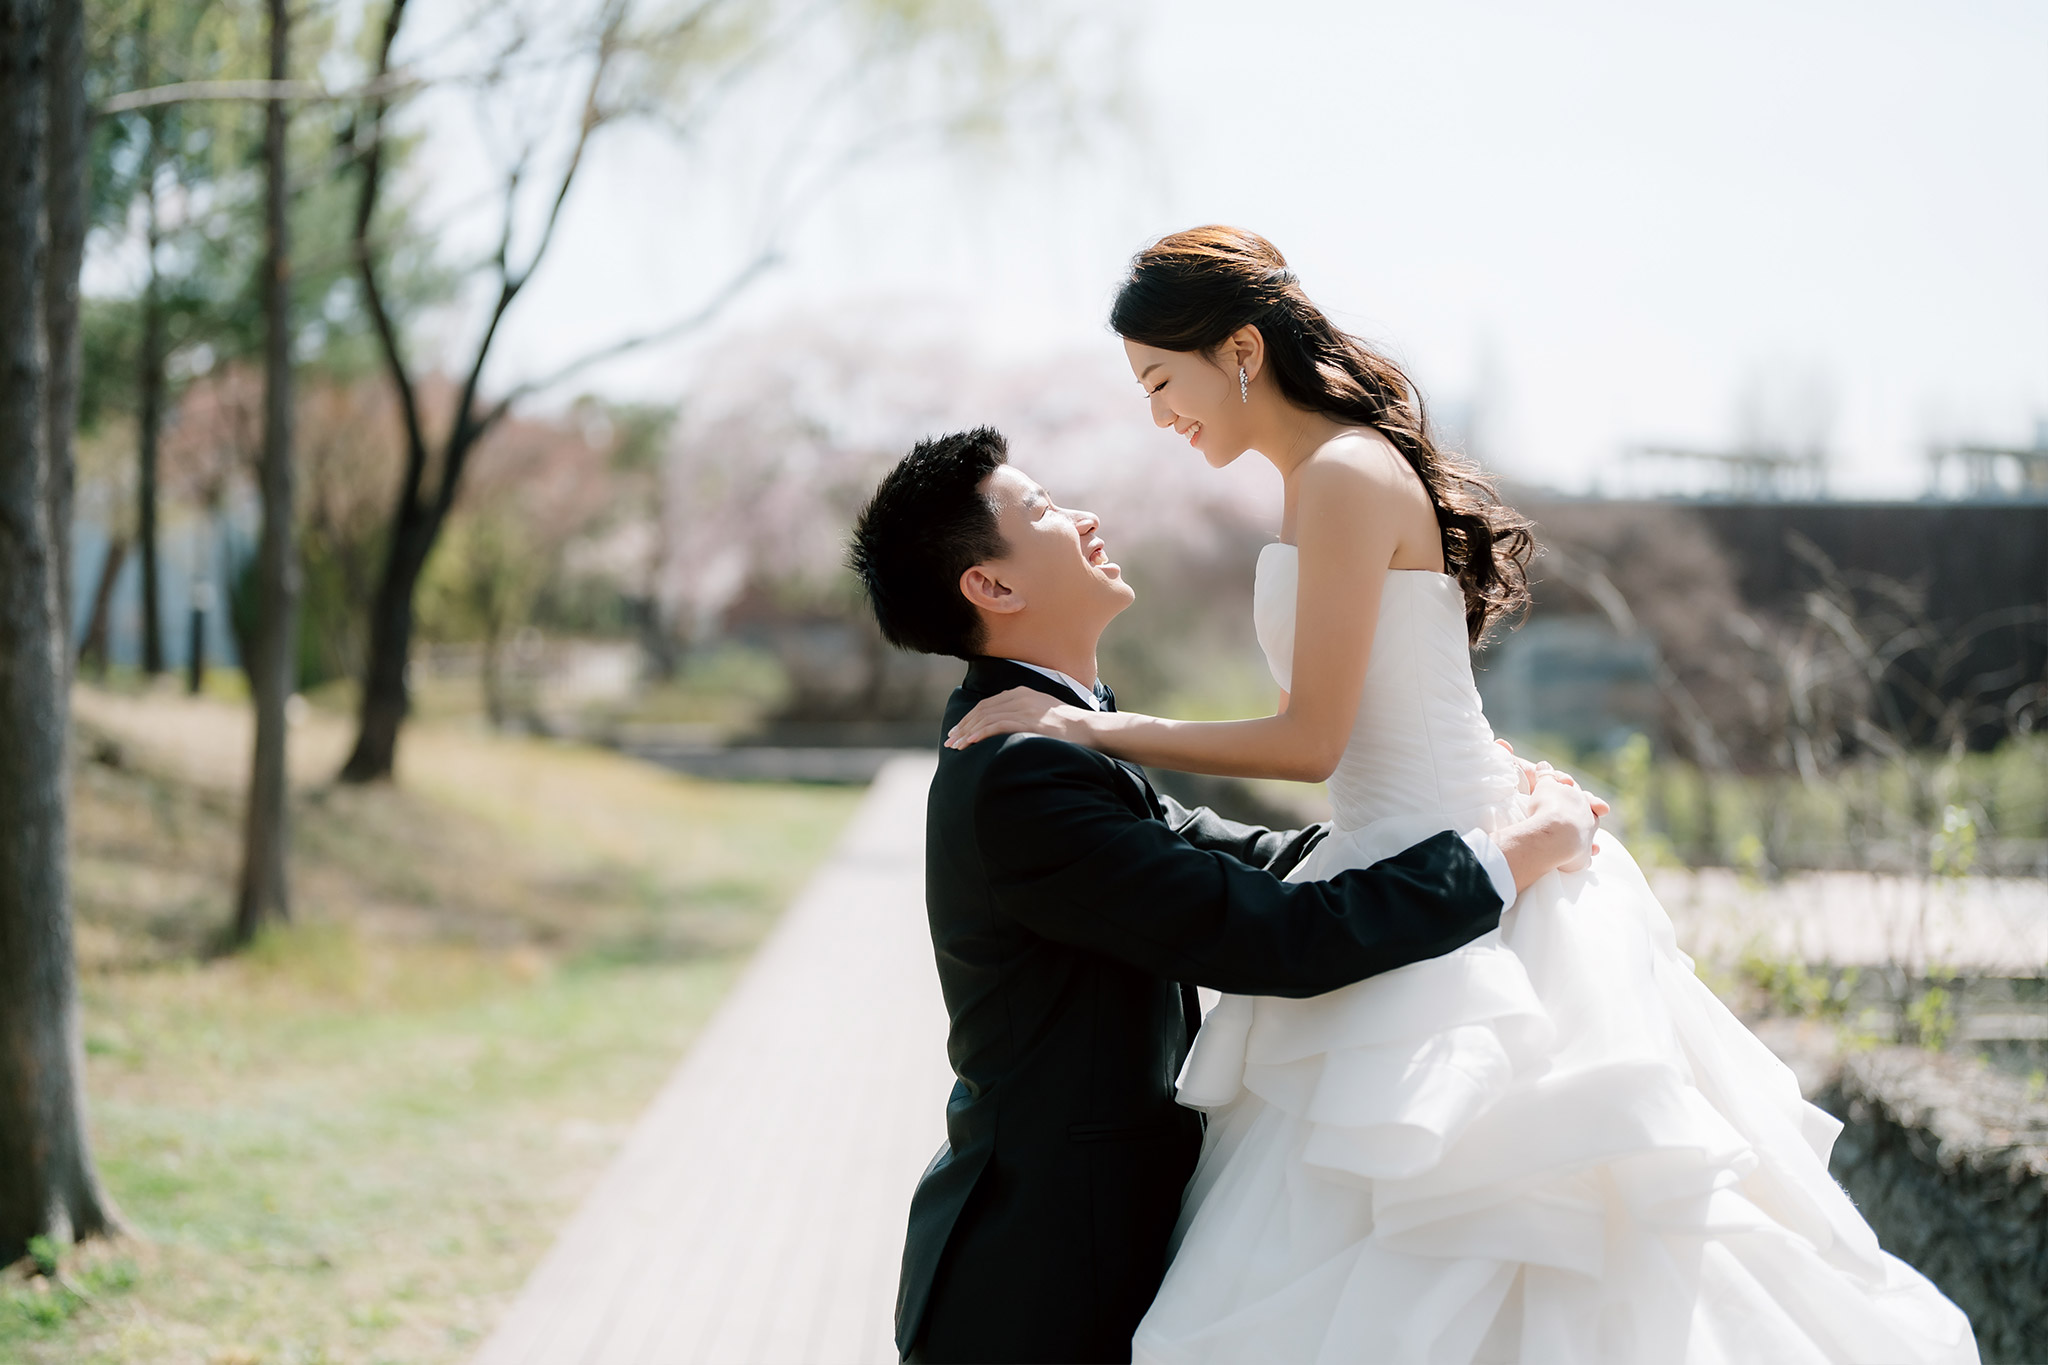 韓國首爾櫻花季婚紗拍攝 仙遊島公園和南山谷韓屋村 by Jungyeol on OneThreeOneFour 6